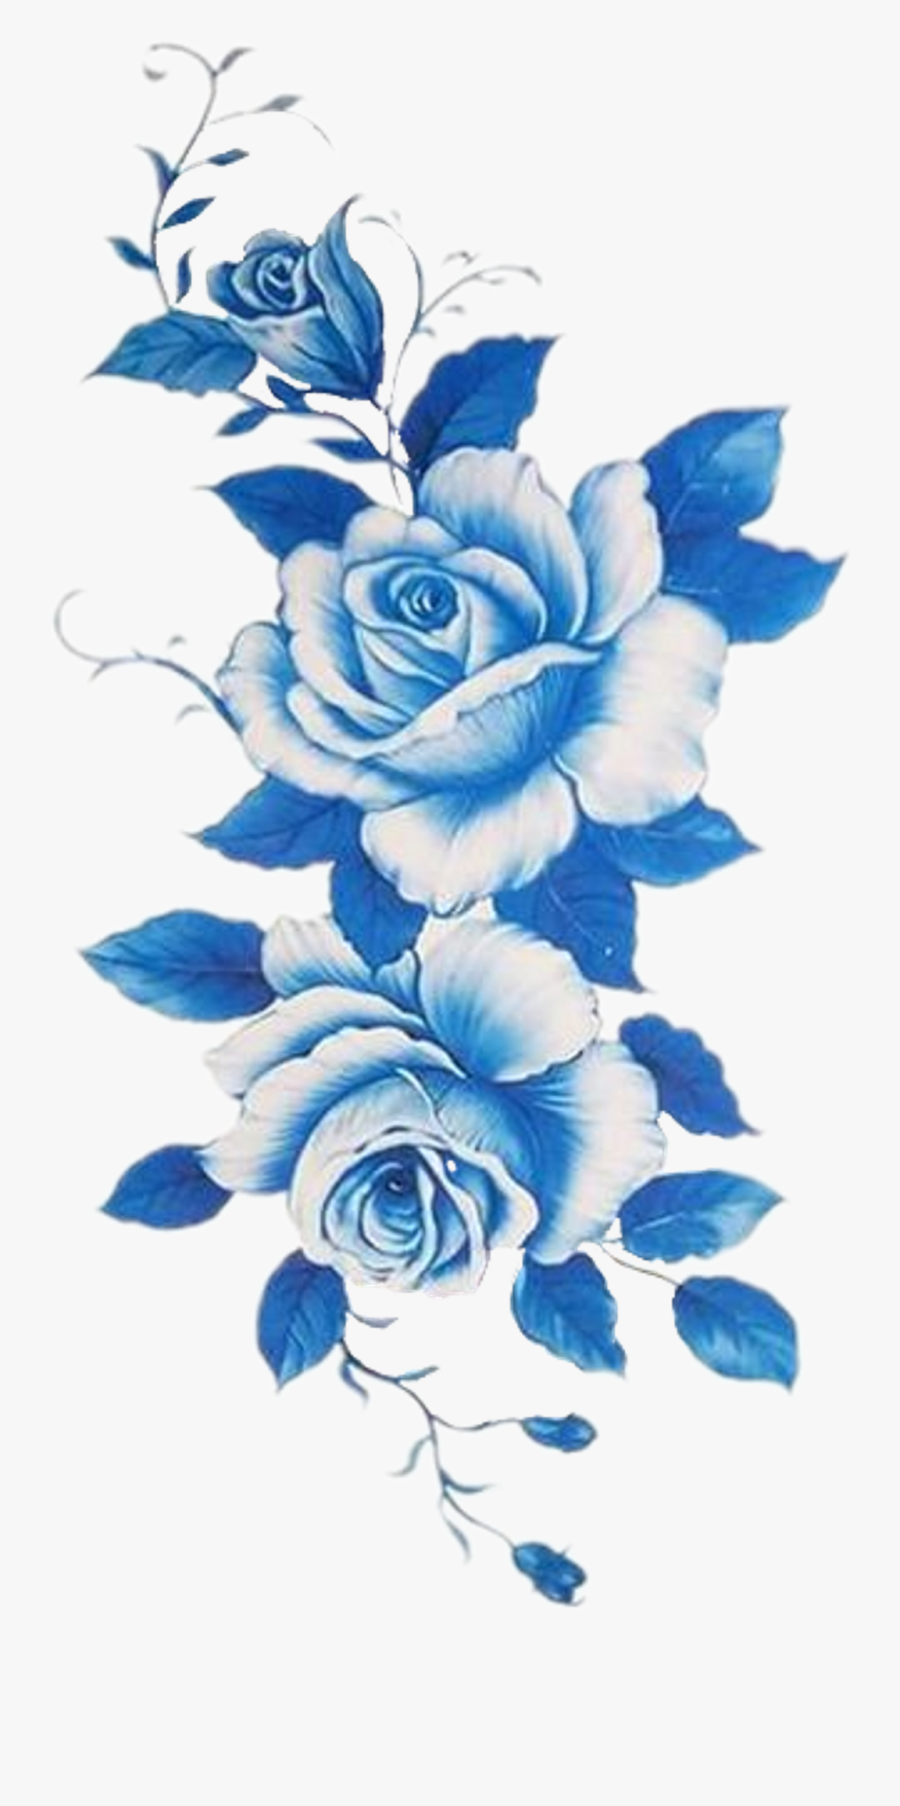 Dark Blue Rose Png, Transparent Clipart